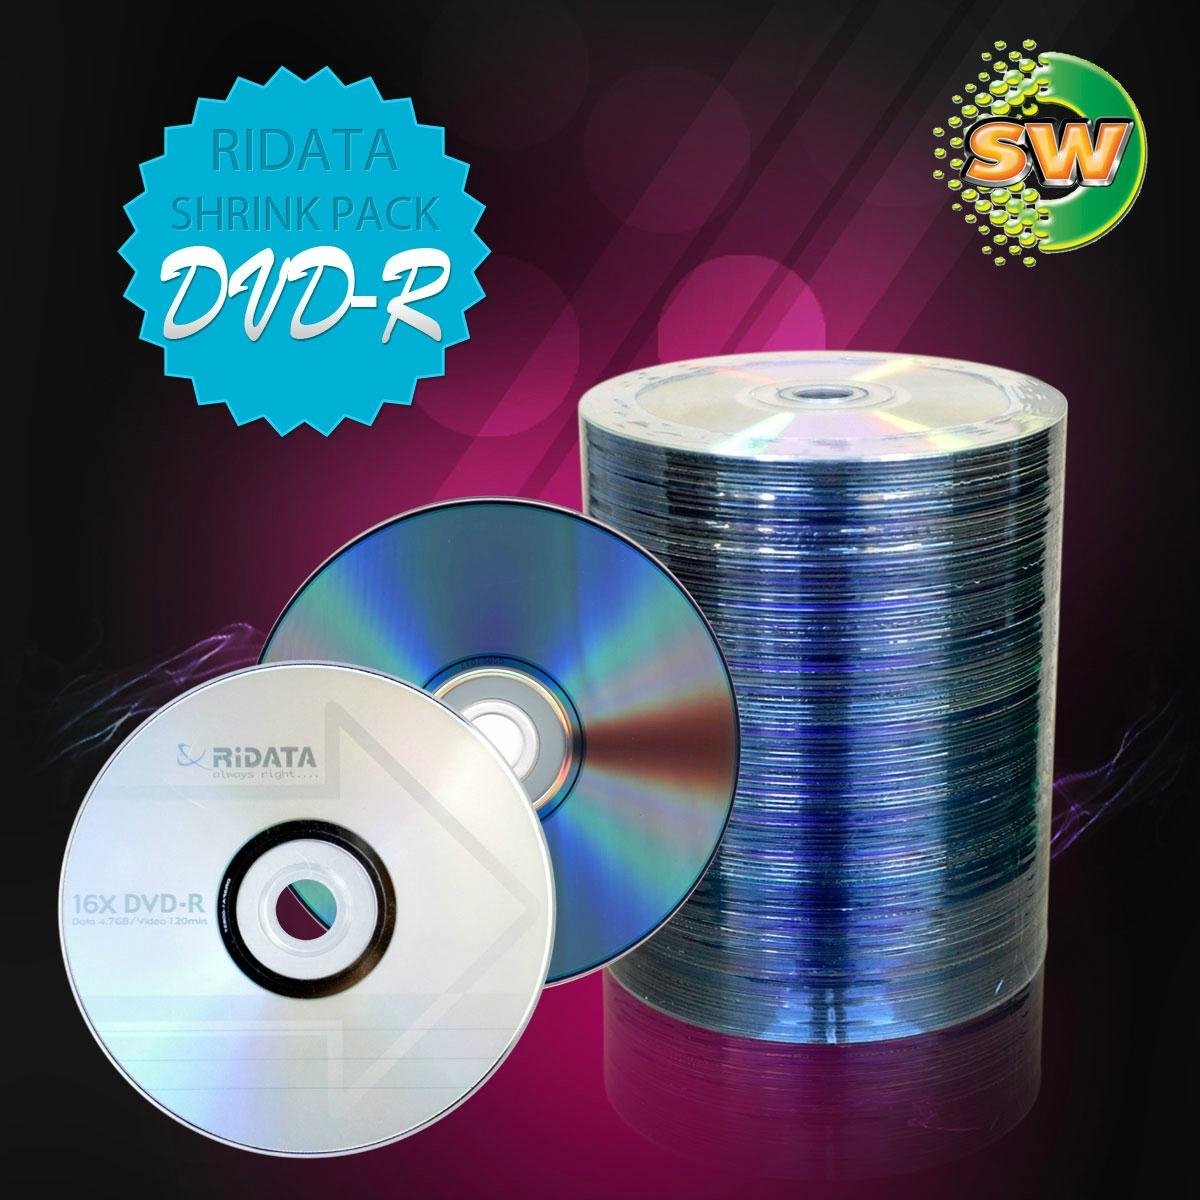 (Stocks) DVD-R RiDATA & ARITA 4.7GB 16X/120min (100 Shrink Pack) - TAIWAN